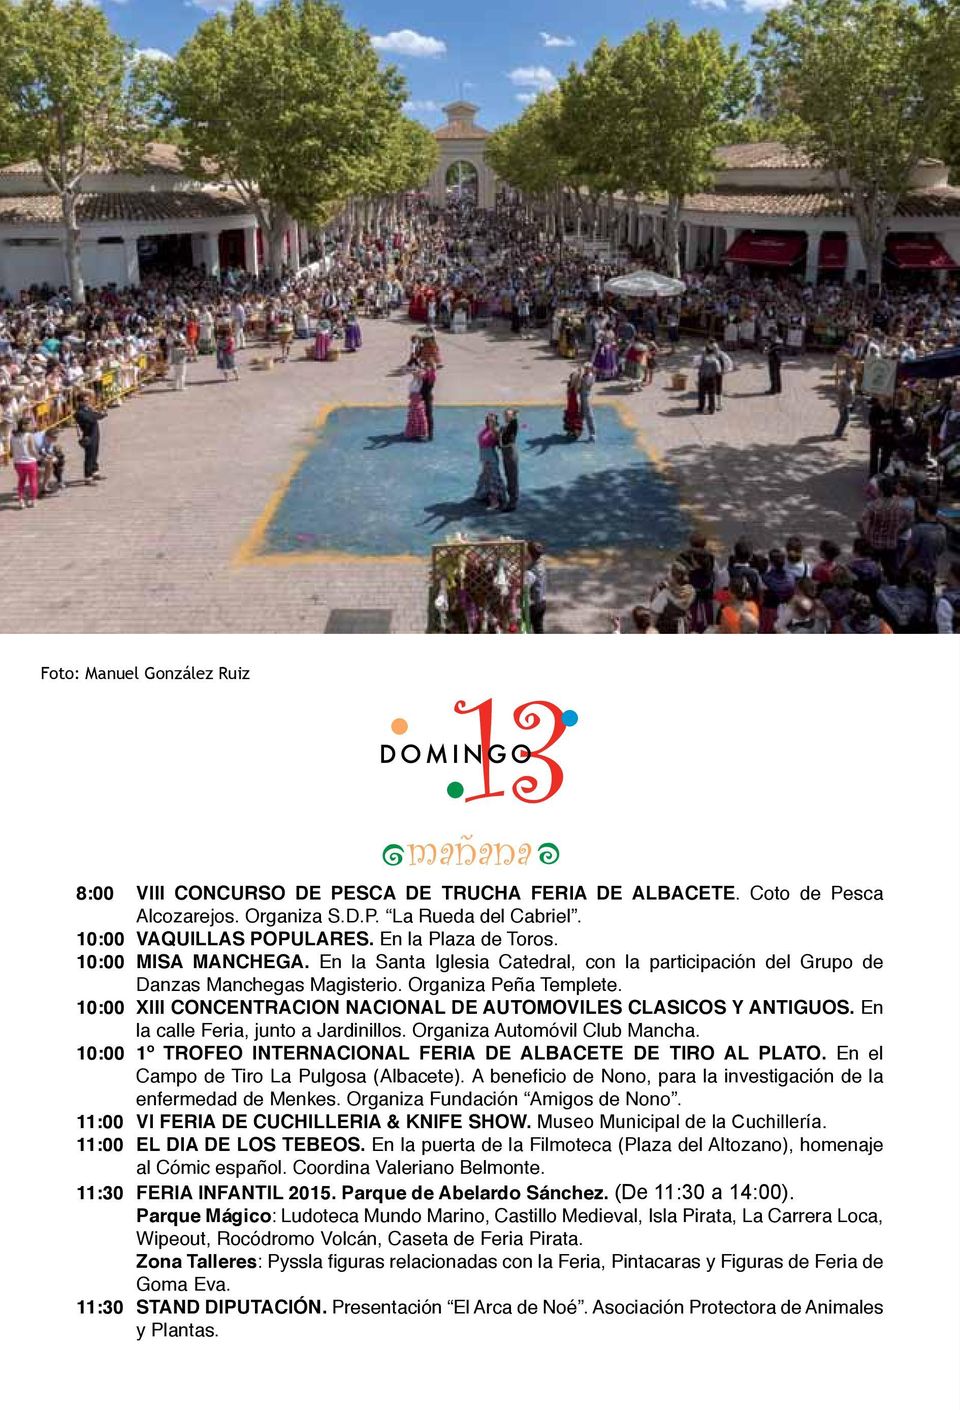 10:00 XIII CONCENTRACION NACIONAL DE AUTOMOVILES CLASICOS Y ANTIGUOS. En la calle Feria, junto a Jardinillos. Organiza Automóvil Club Mancha.